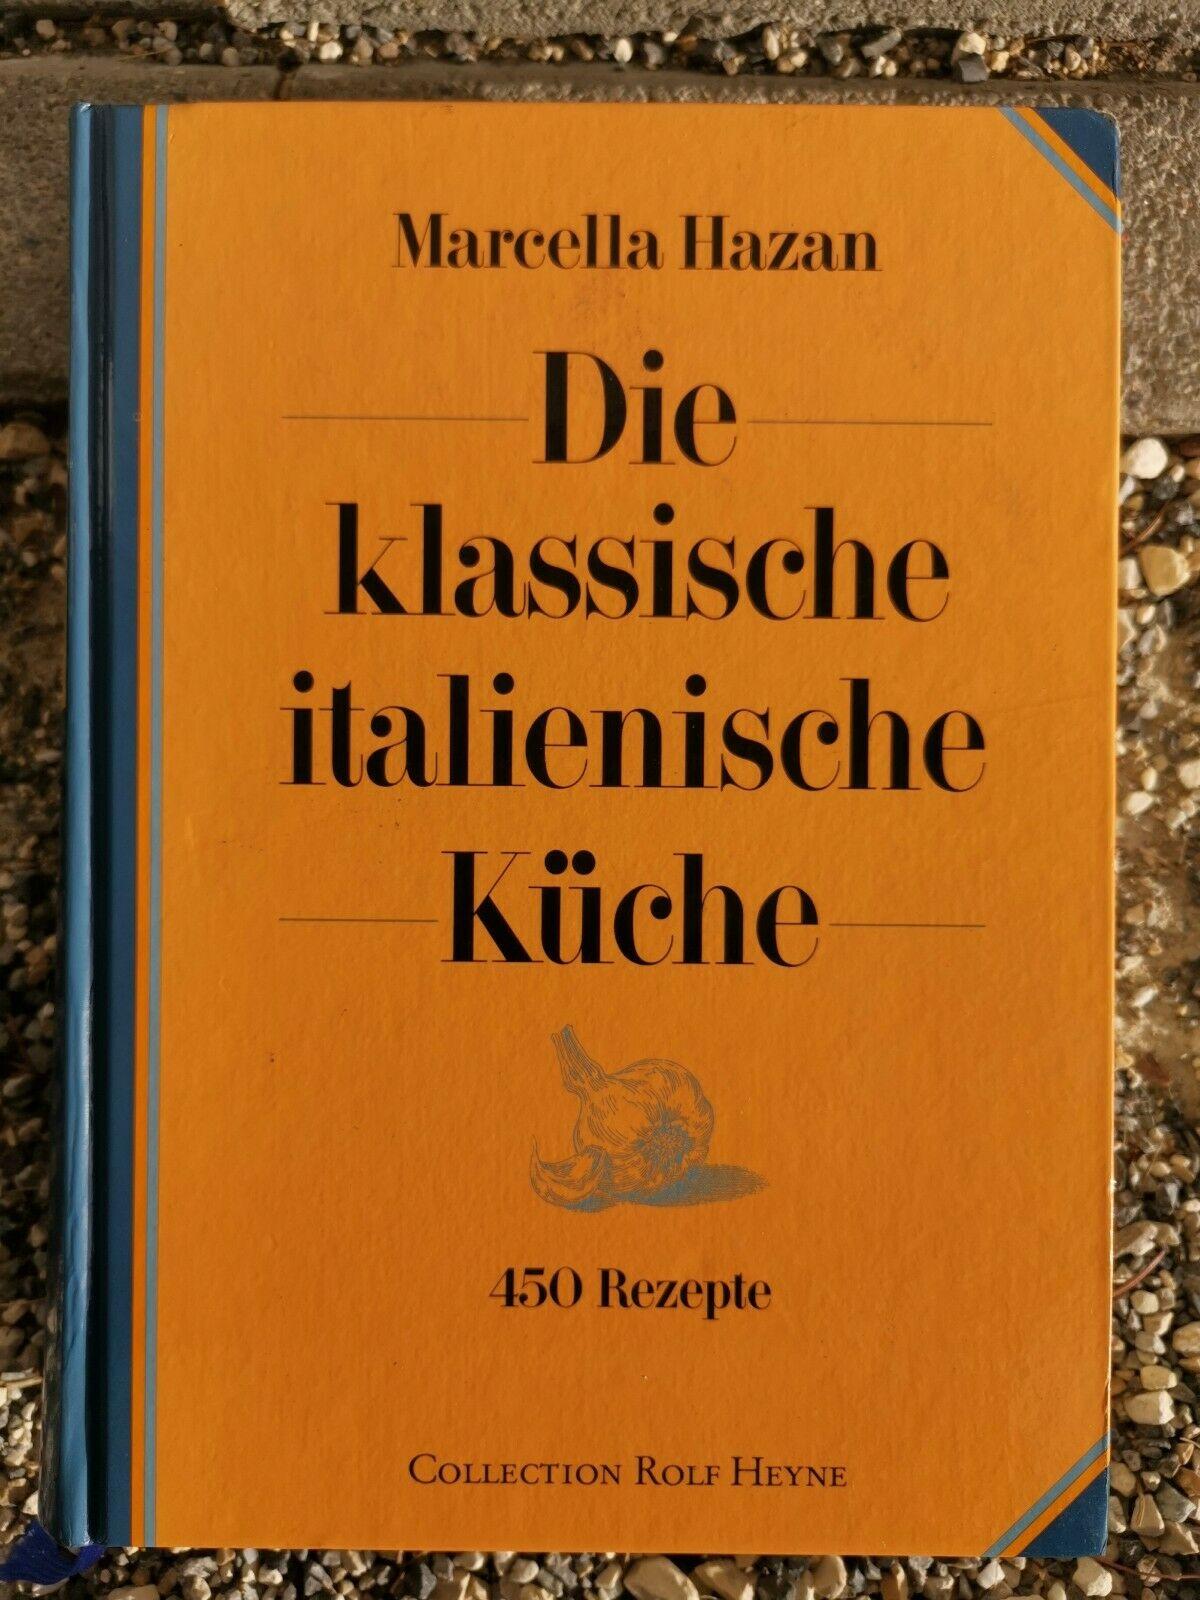 Die klassische italienische Küche. 450 Rezepte, Marcella Hazan